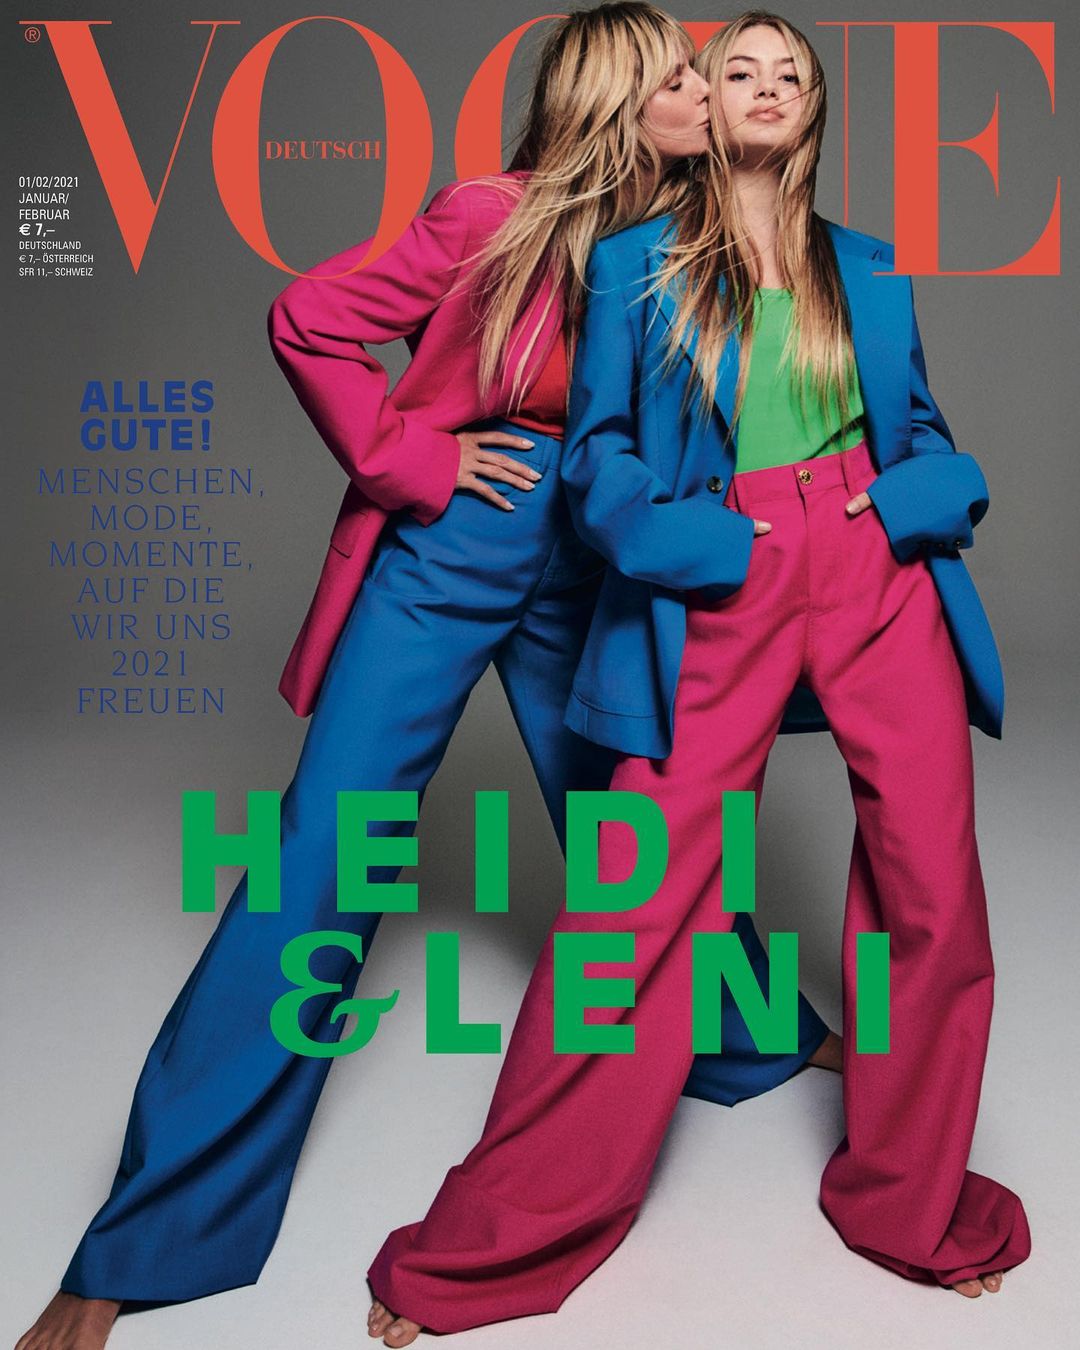 Хайди Клум снялась для обложки Vogue вместе с 16-летней дочерью Лени